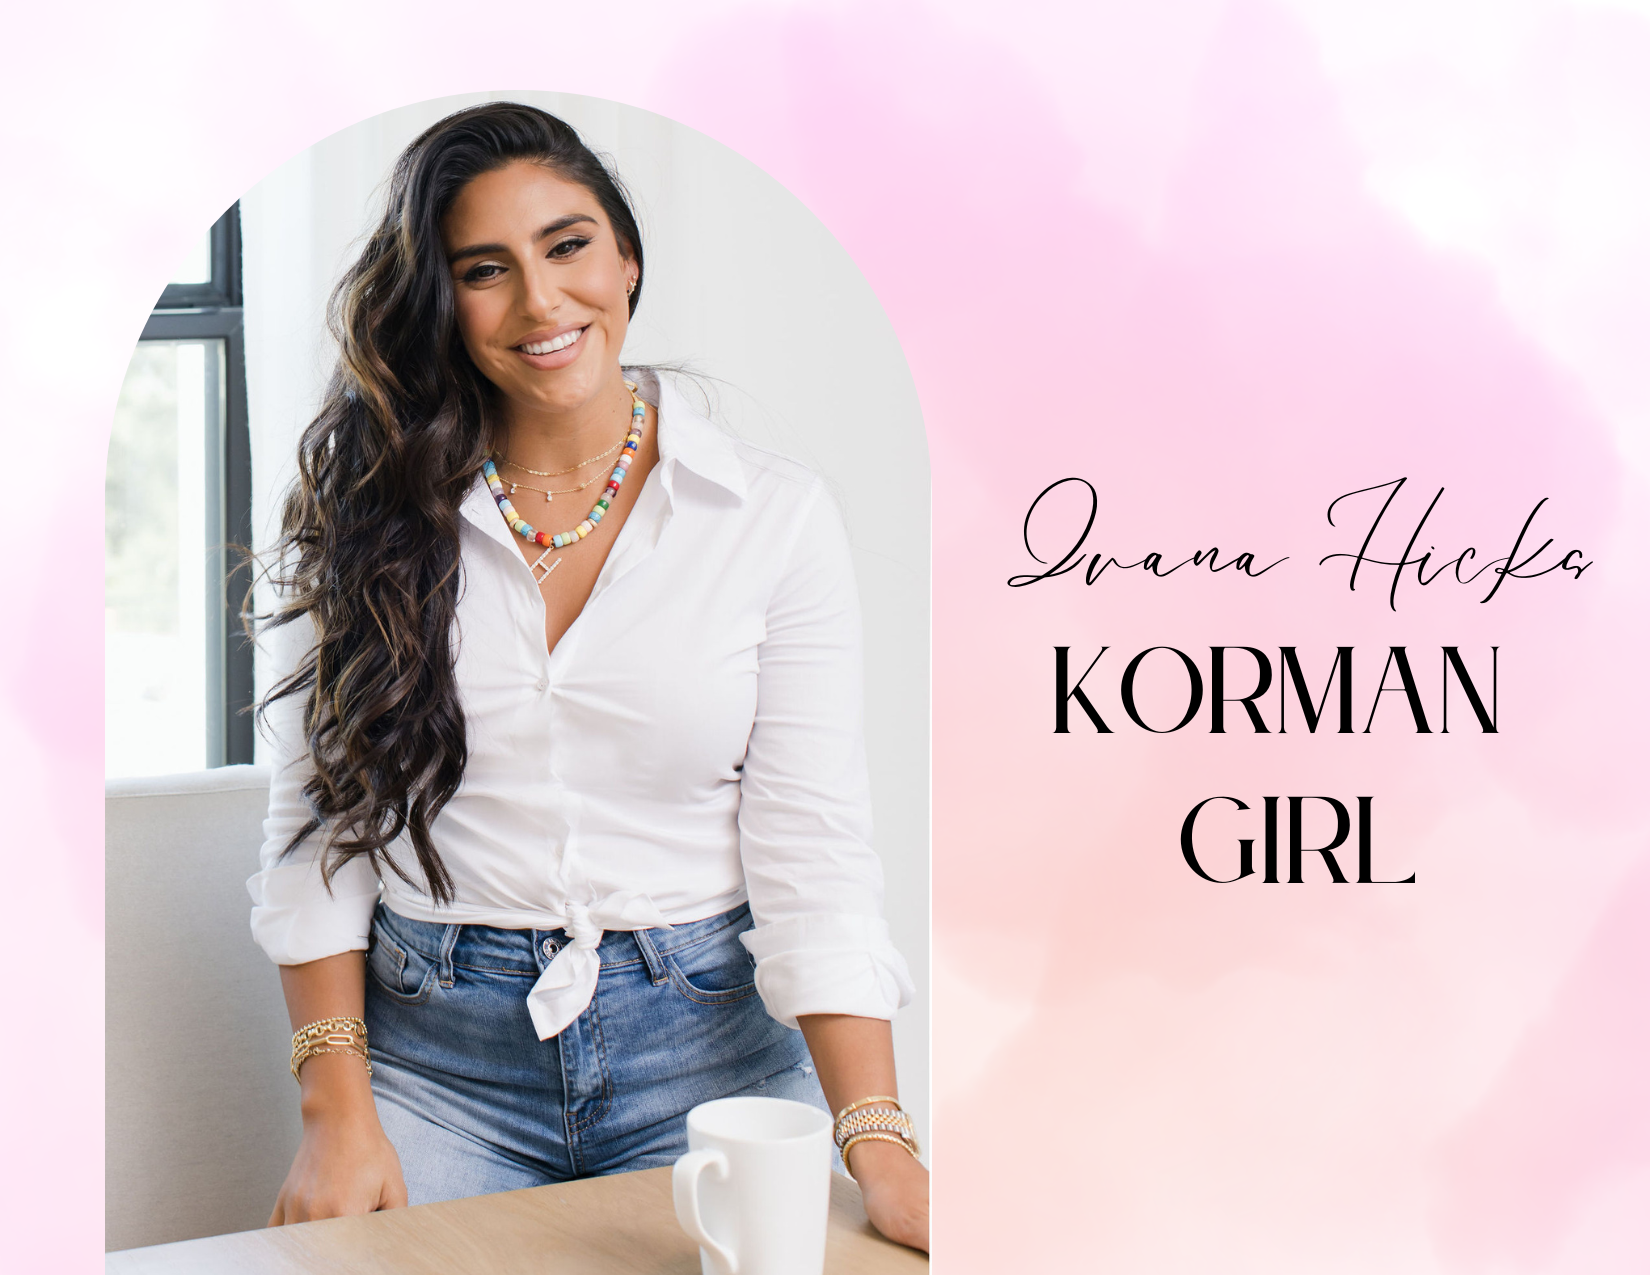 Introducing the Korman Girl...Ivana